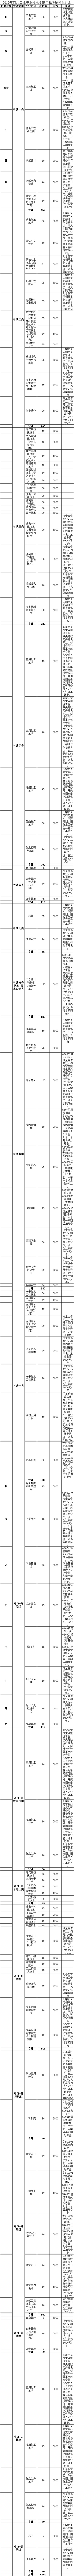 2019年河北工业职业技术学院单独考试招生简章